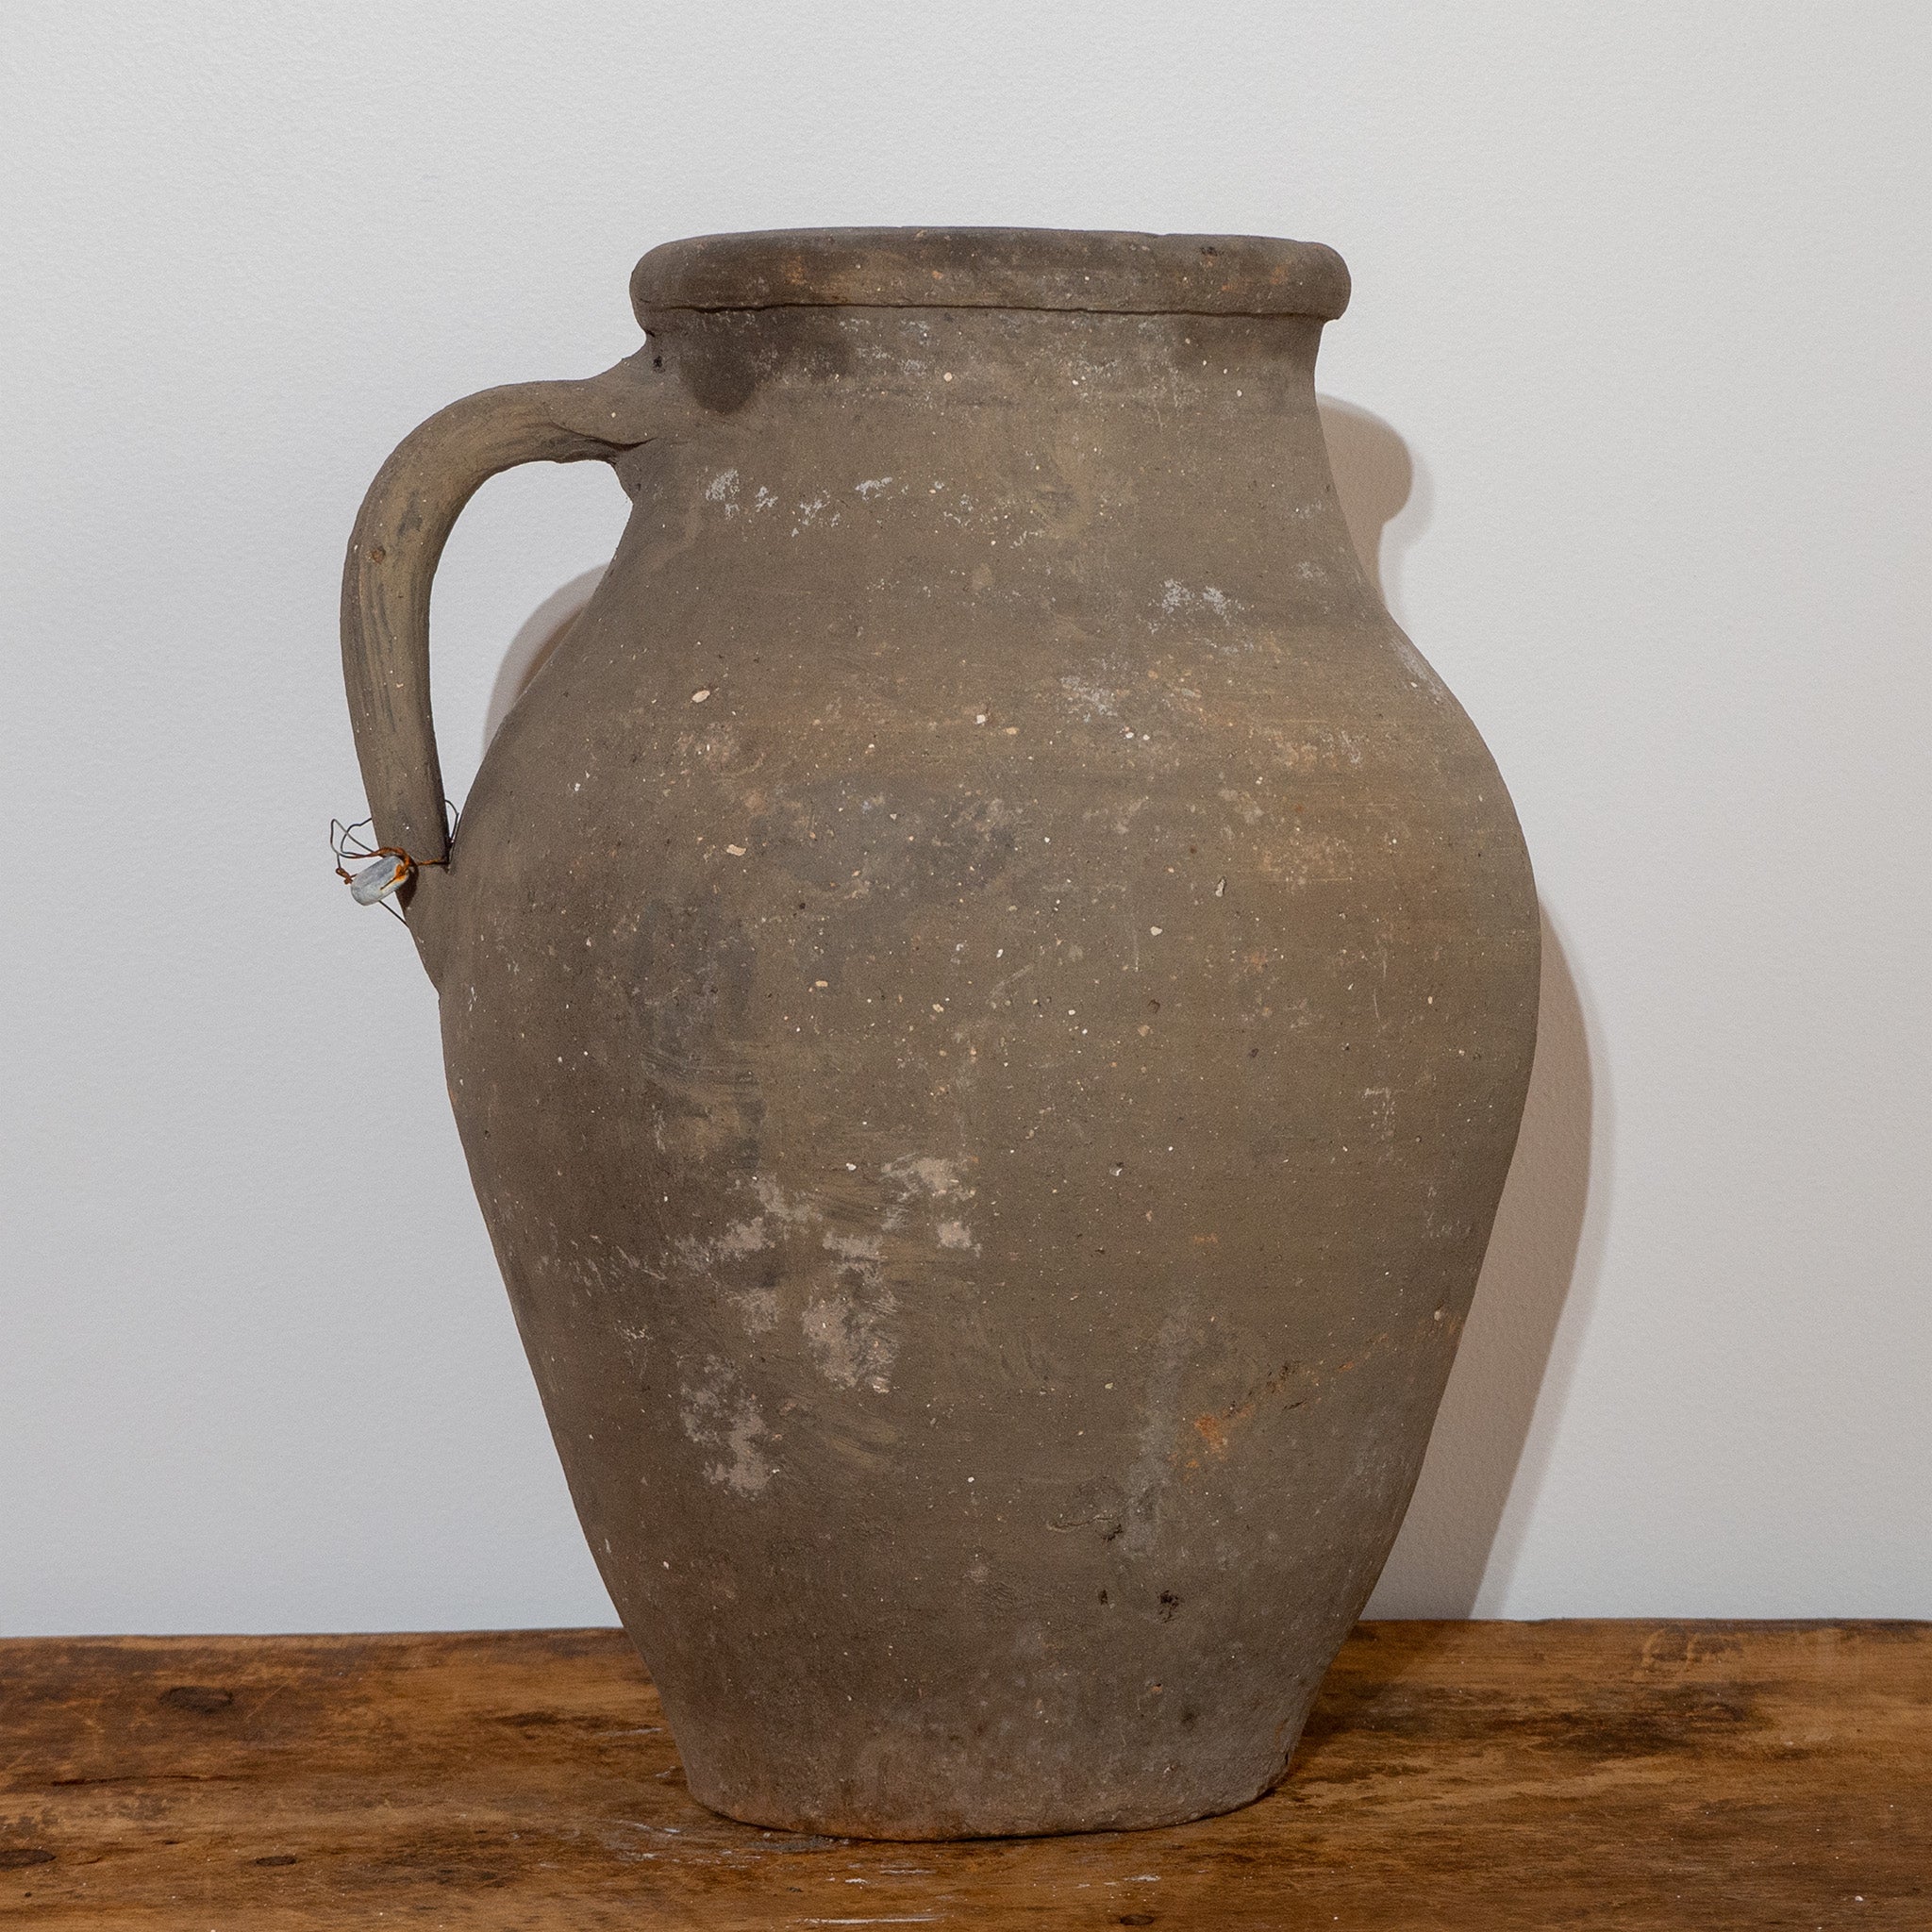 Vintage Turkish black single handled jug urn on vintage wooden bench